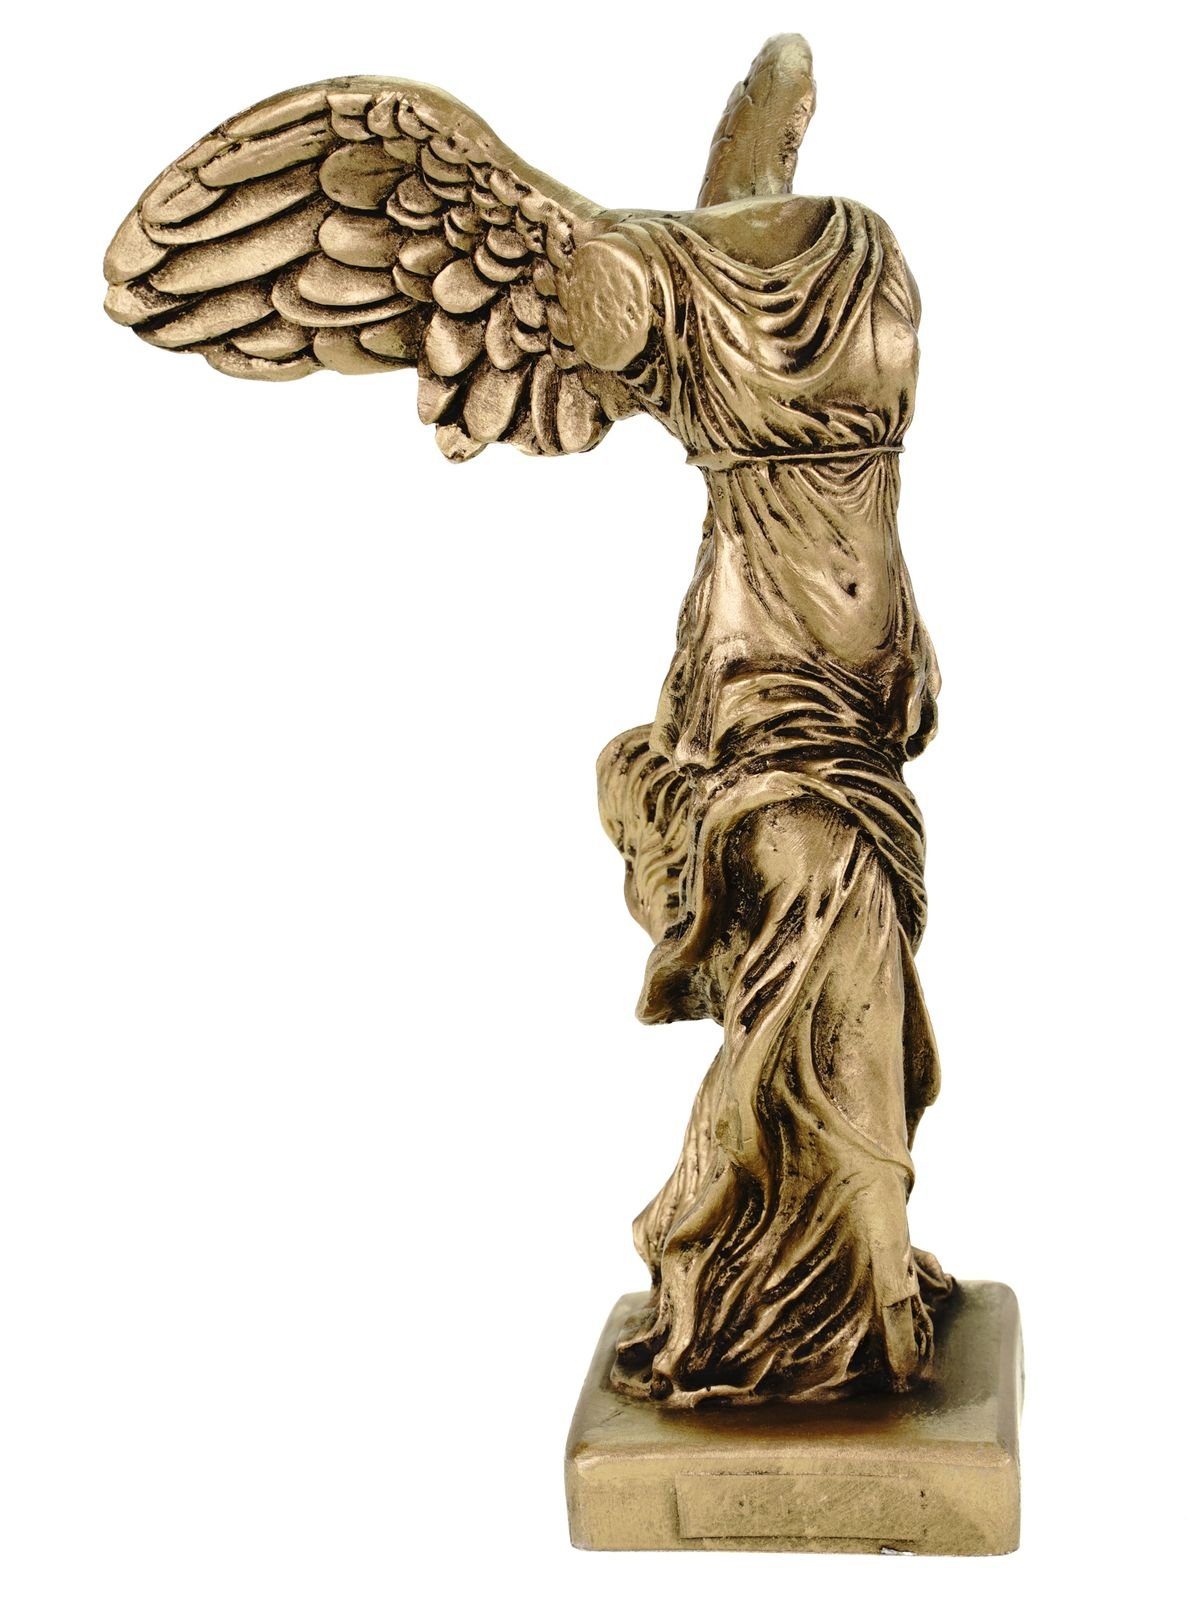 Kremers Schatzkiste Dekofigur Alabaster Nike Siegesgöttin von Samothrake Figur Skulptur 20 cm gold Siegesdenkmal